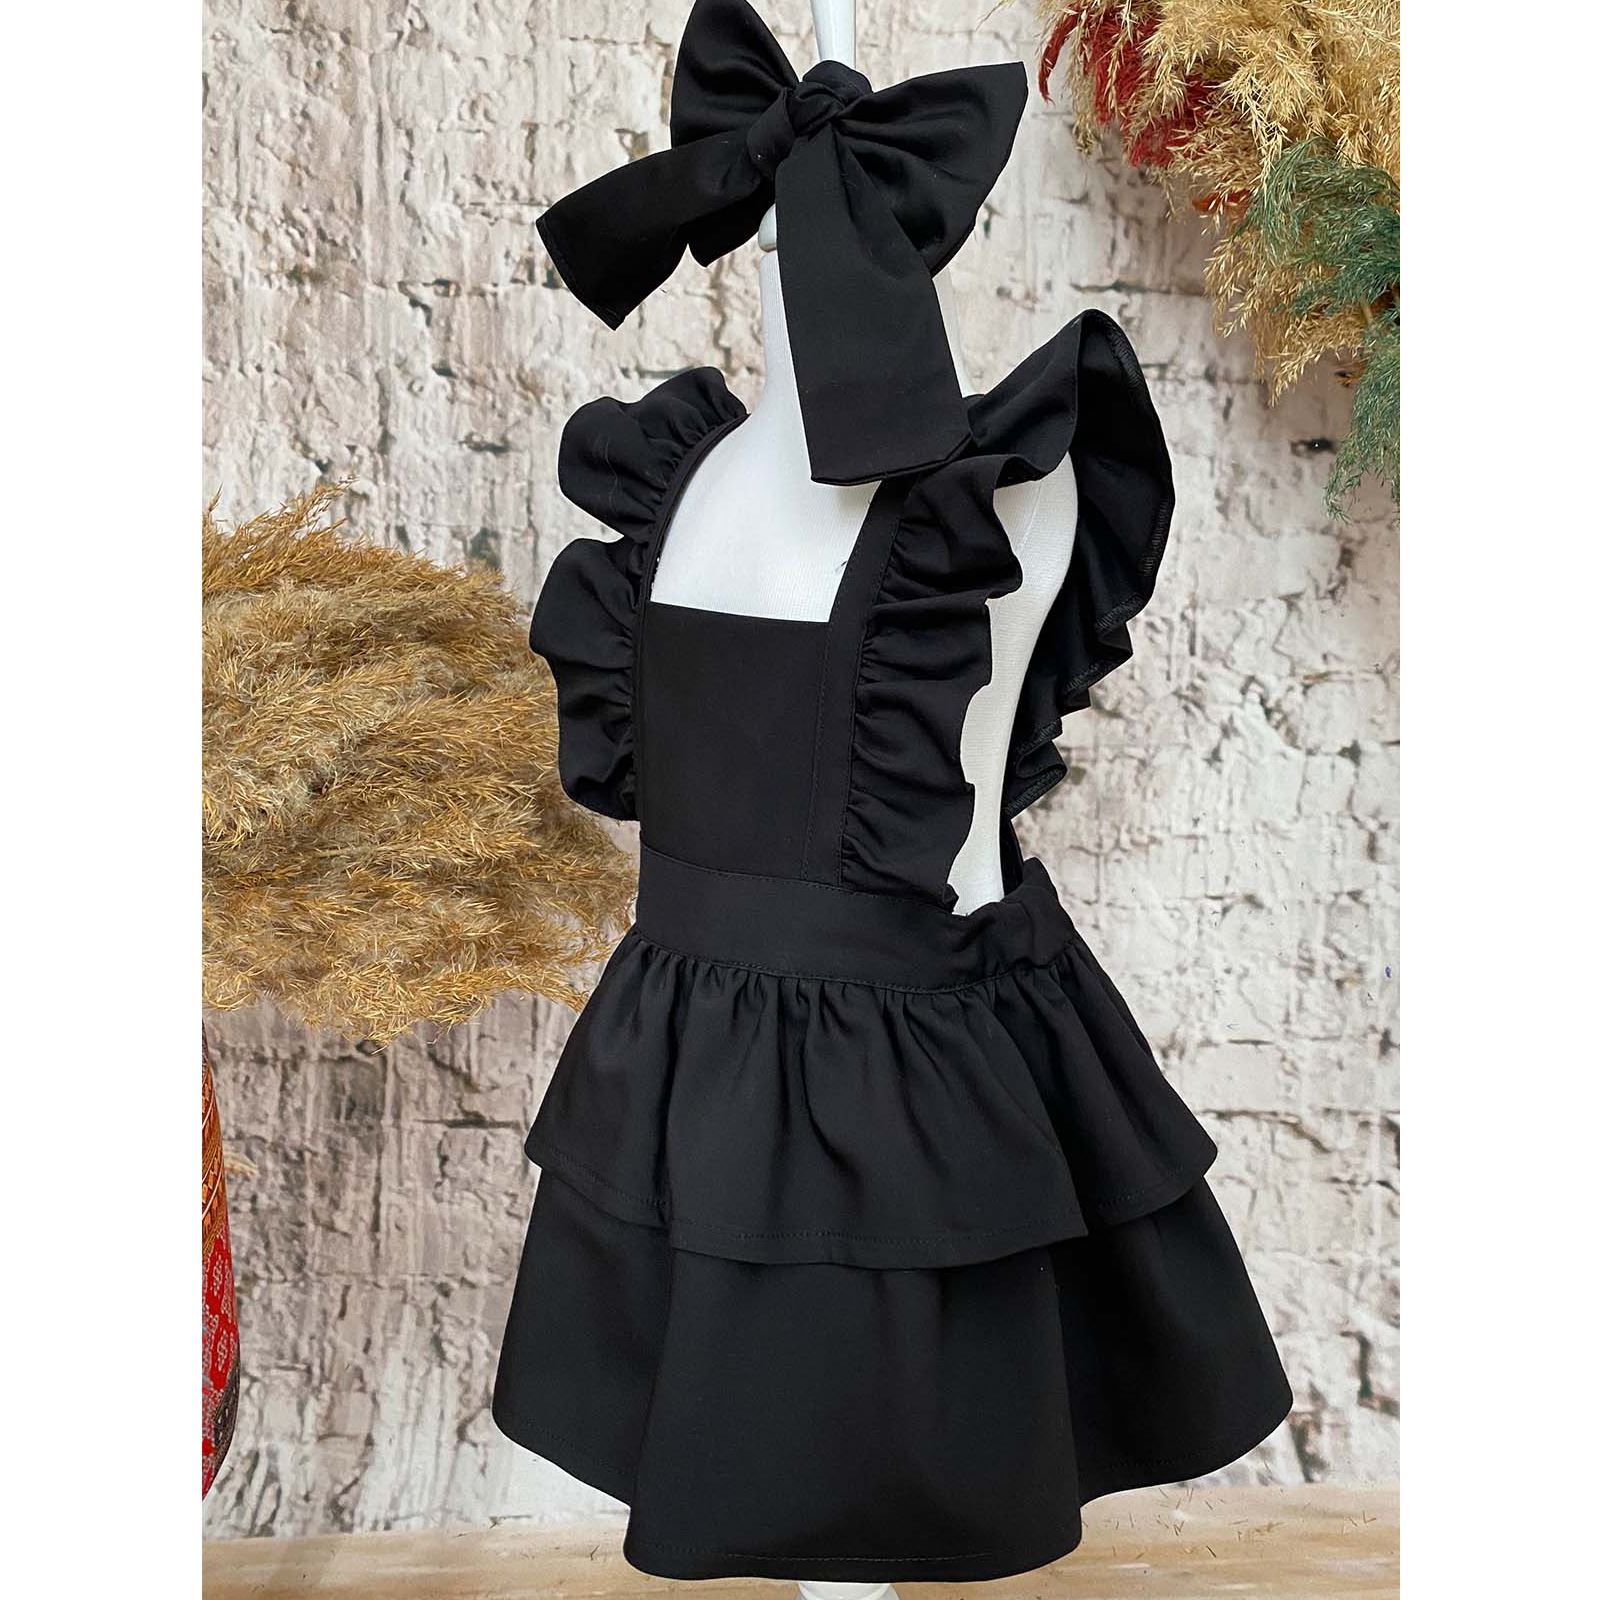 Shecco Babba Askıları Fırfırlı Kat Kat Kız Çocuk Elbise Bandana Takım 1-5 Yaş Siyah